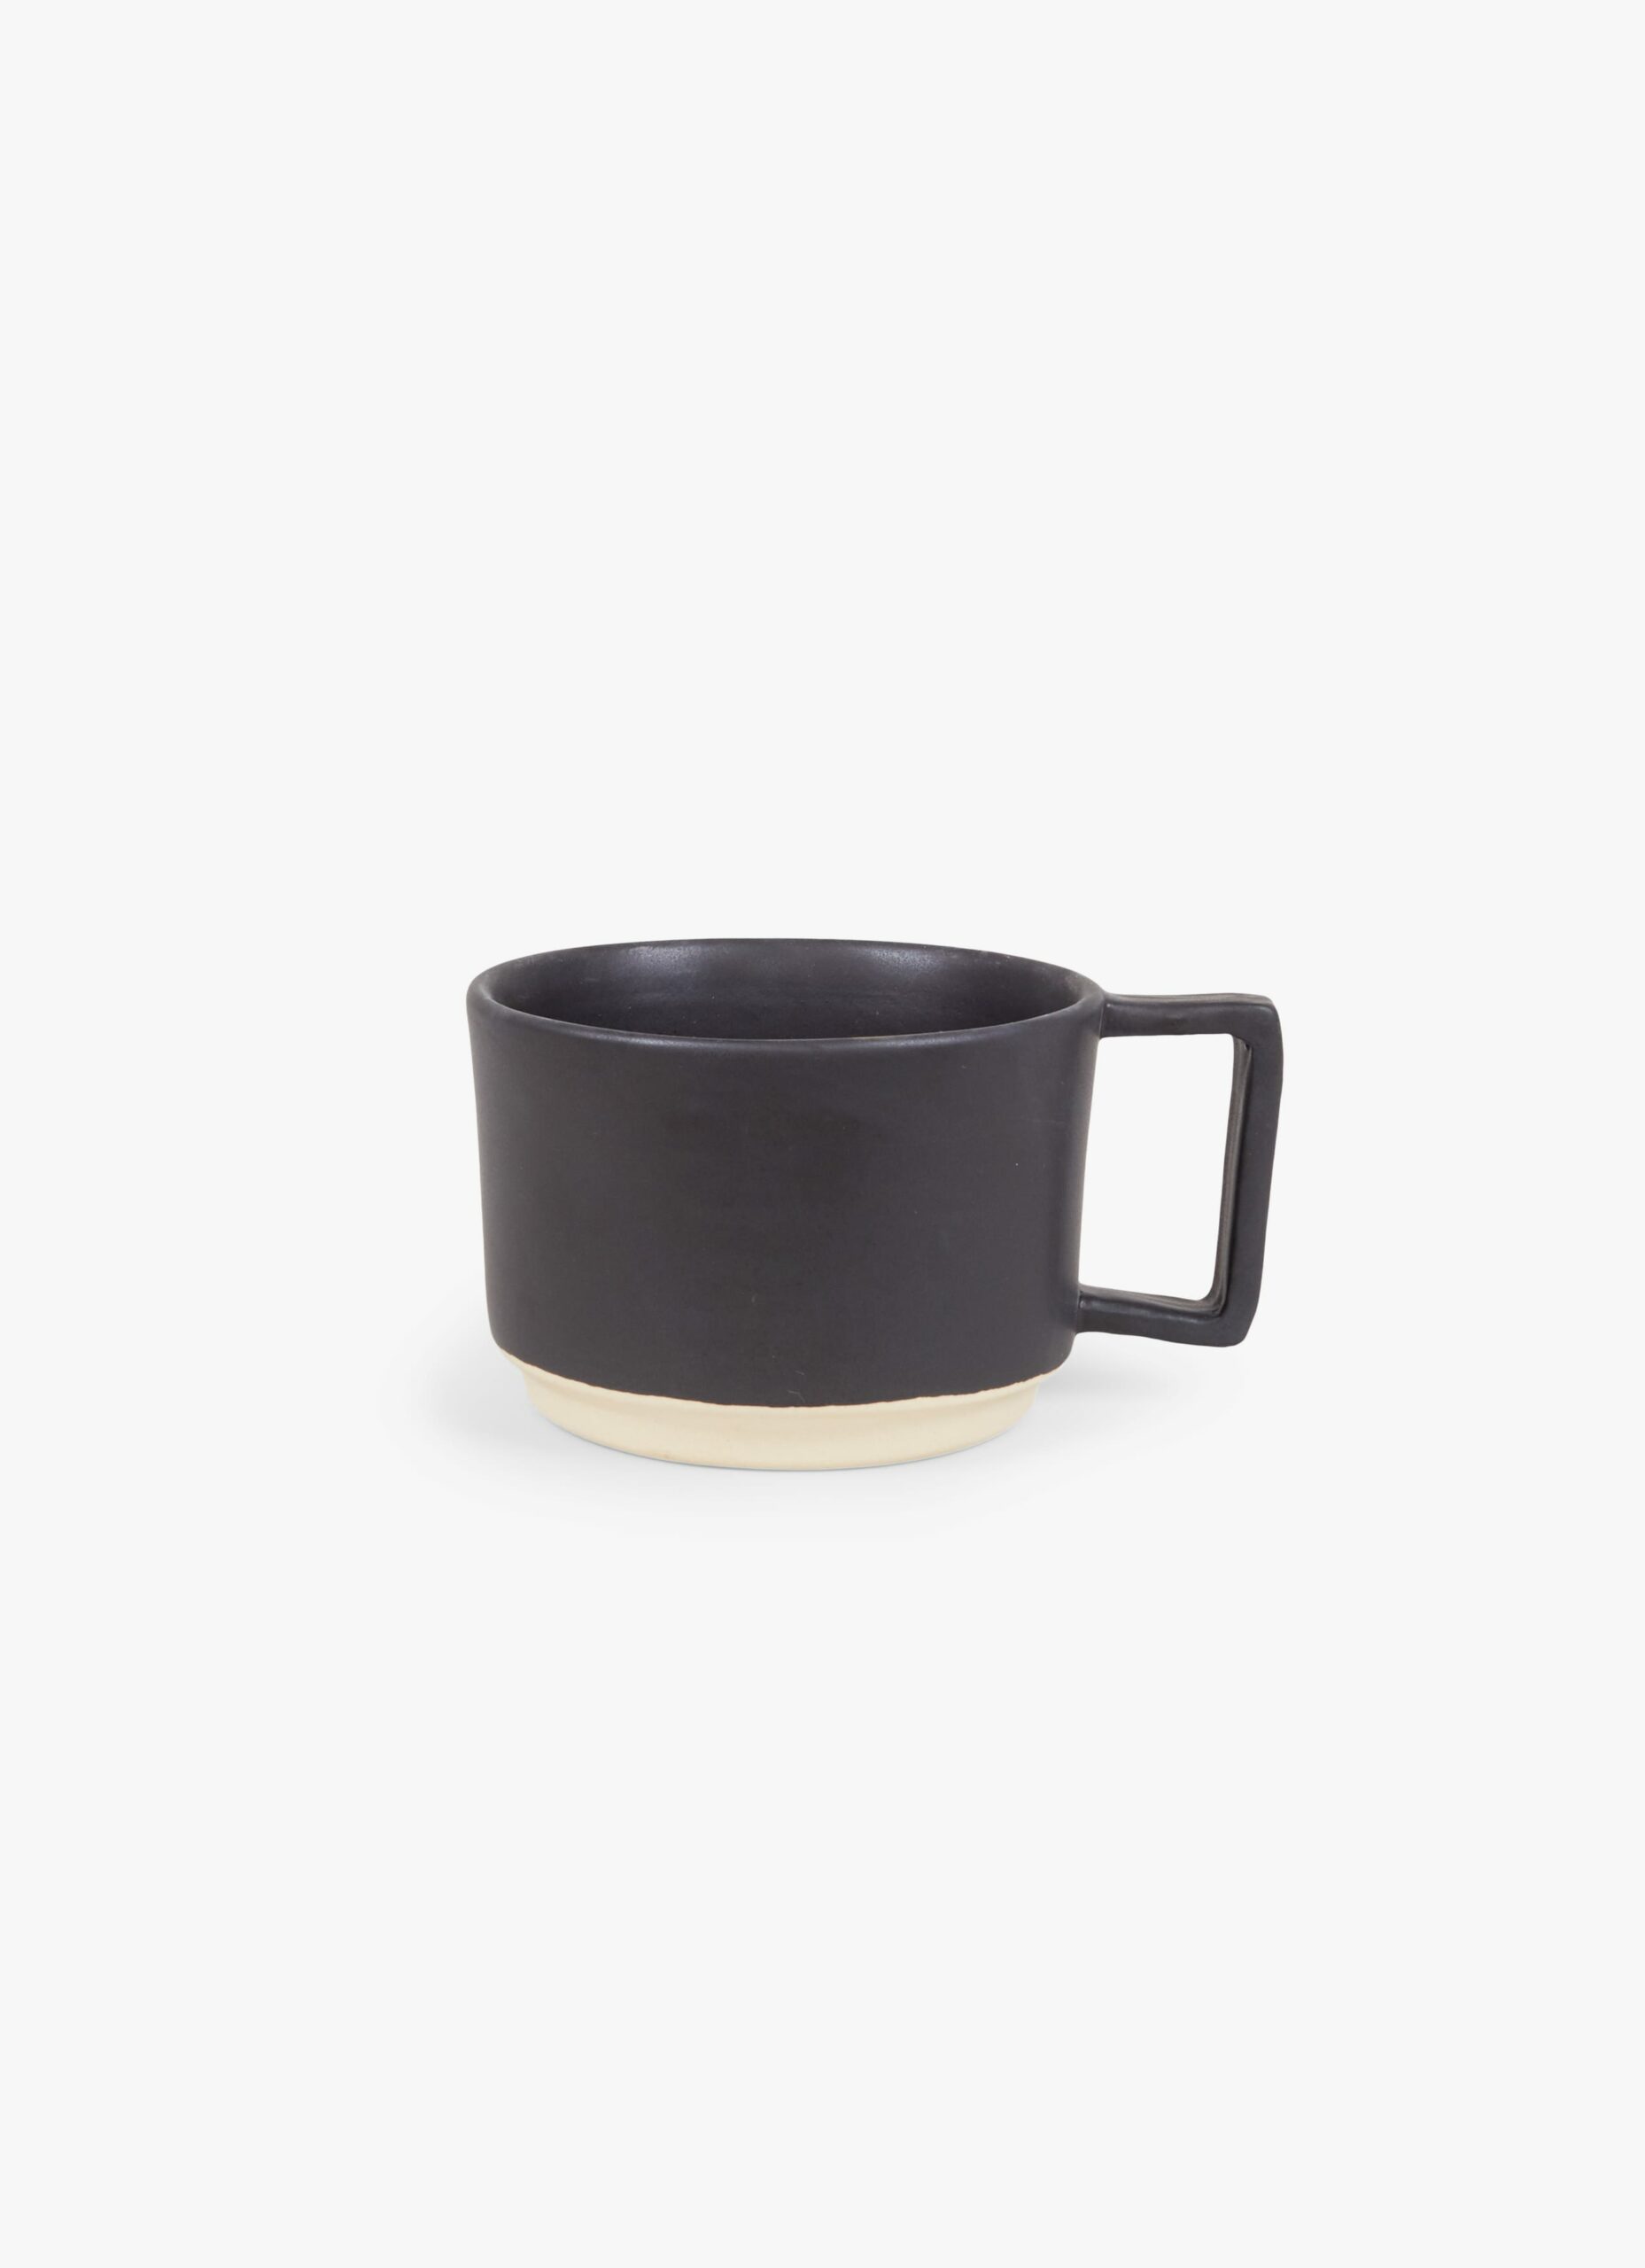 Frama - Otto - Low Mug with Handle - Black